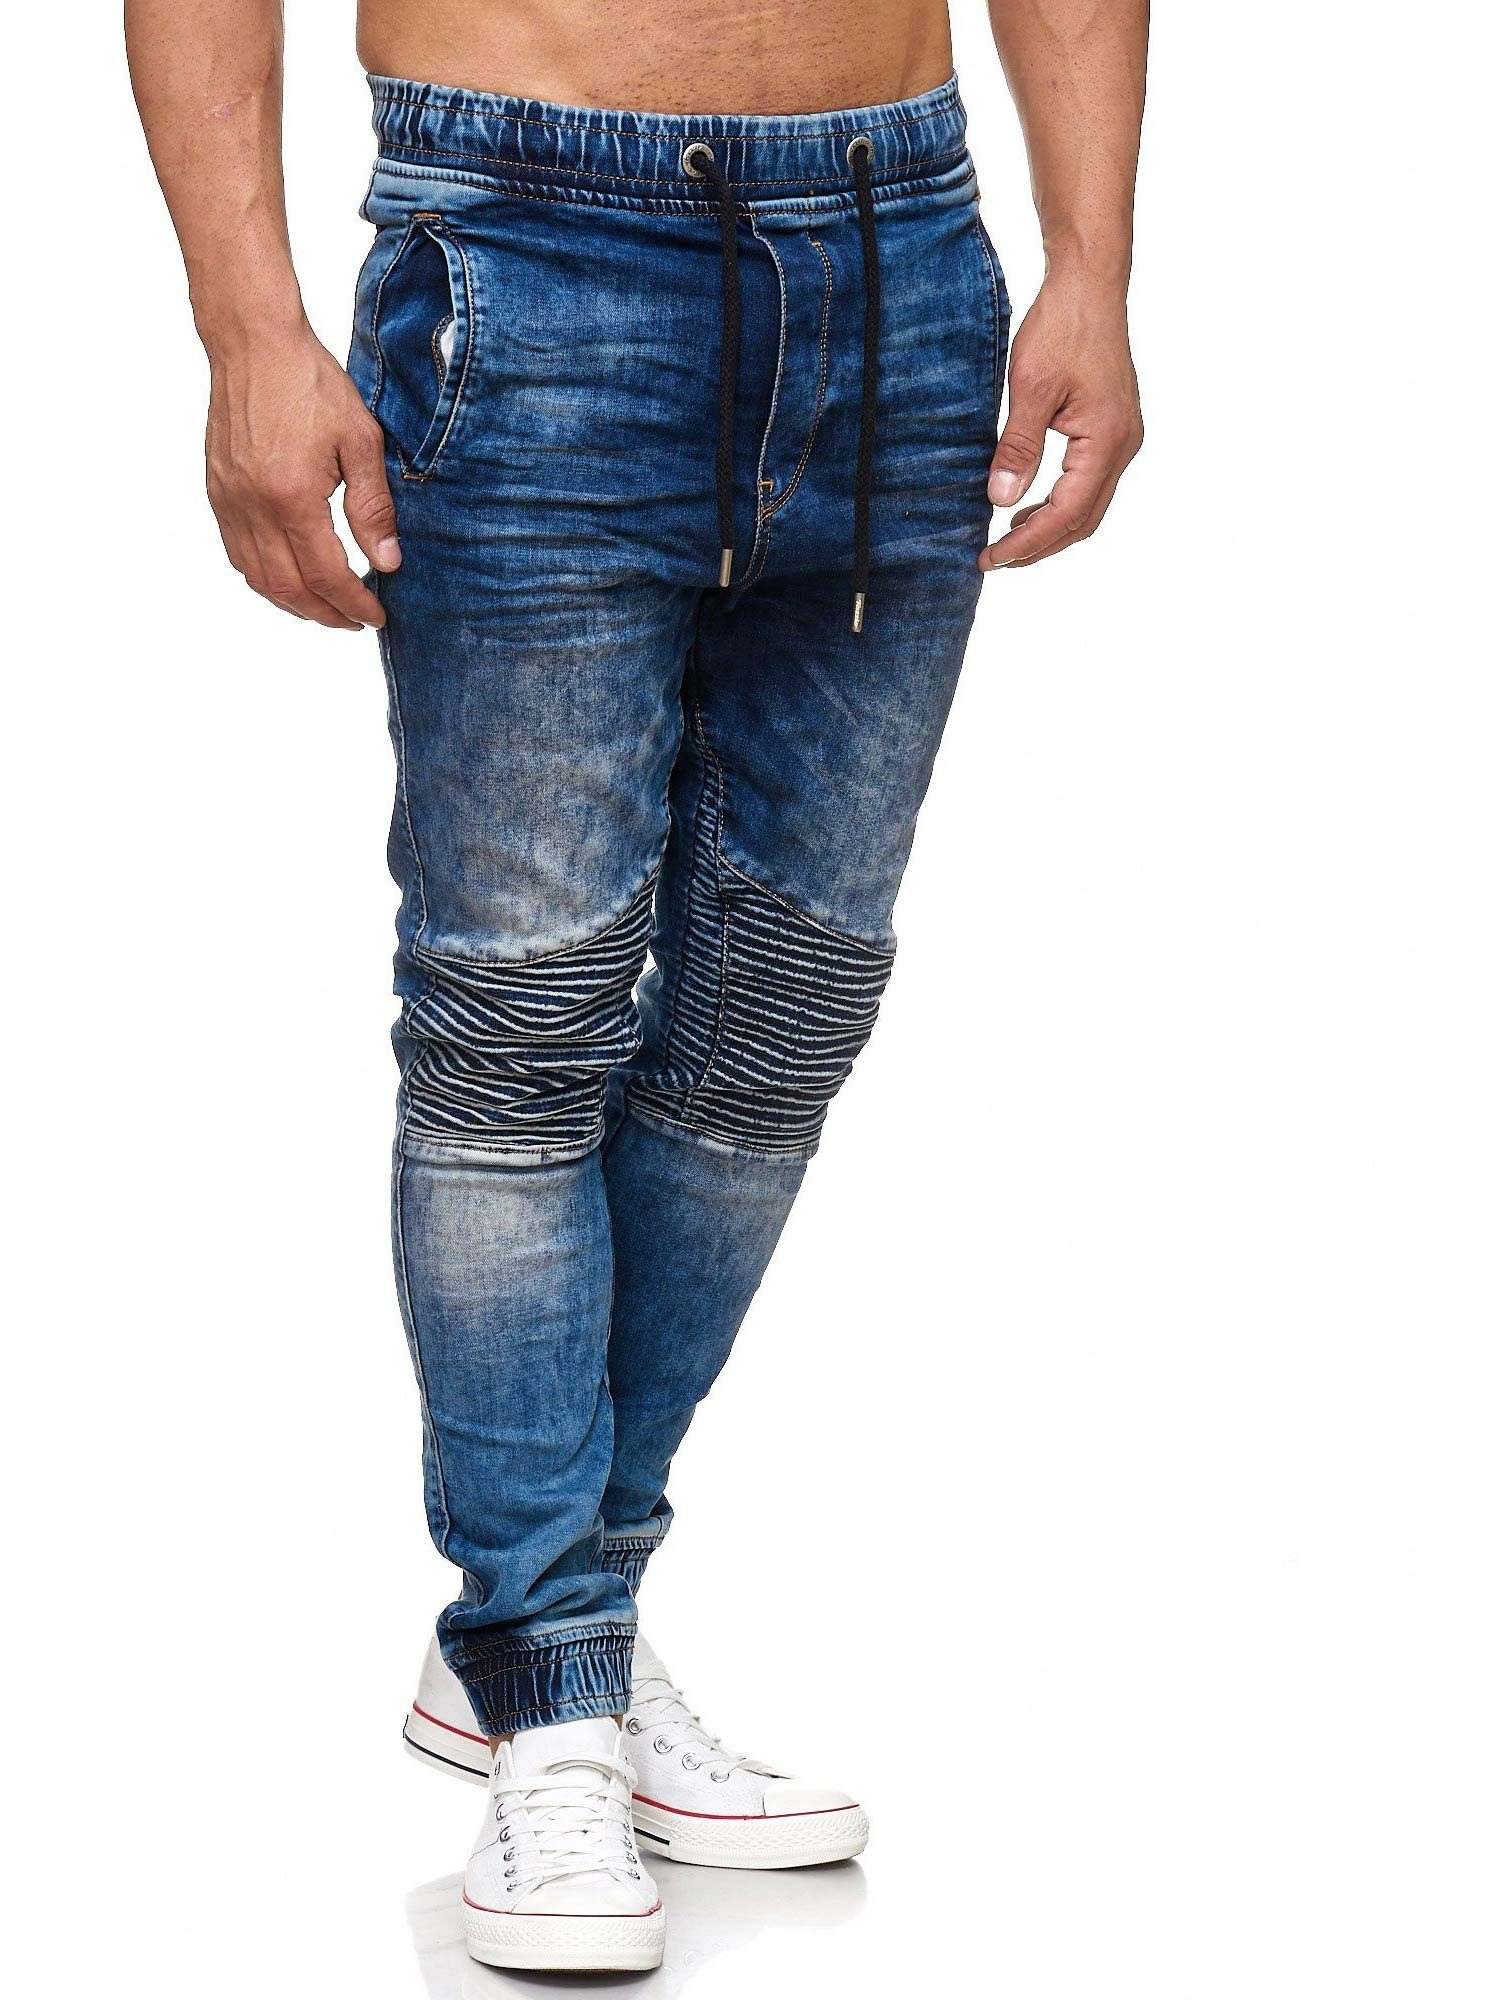 Tazzio Straight-Jeans 16505 Sweat Biker-Look blau im Hose Jogger-Stil &